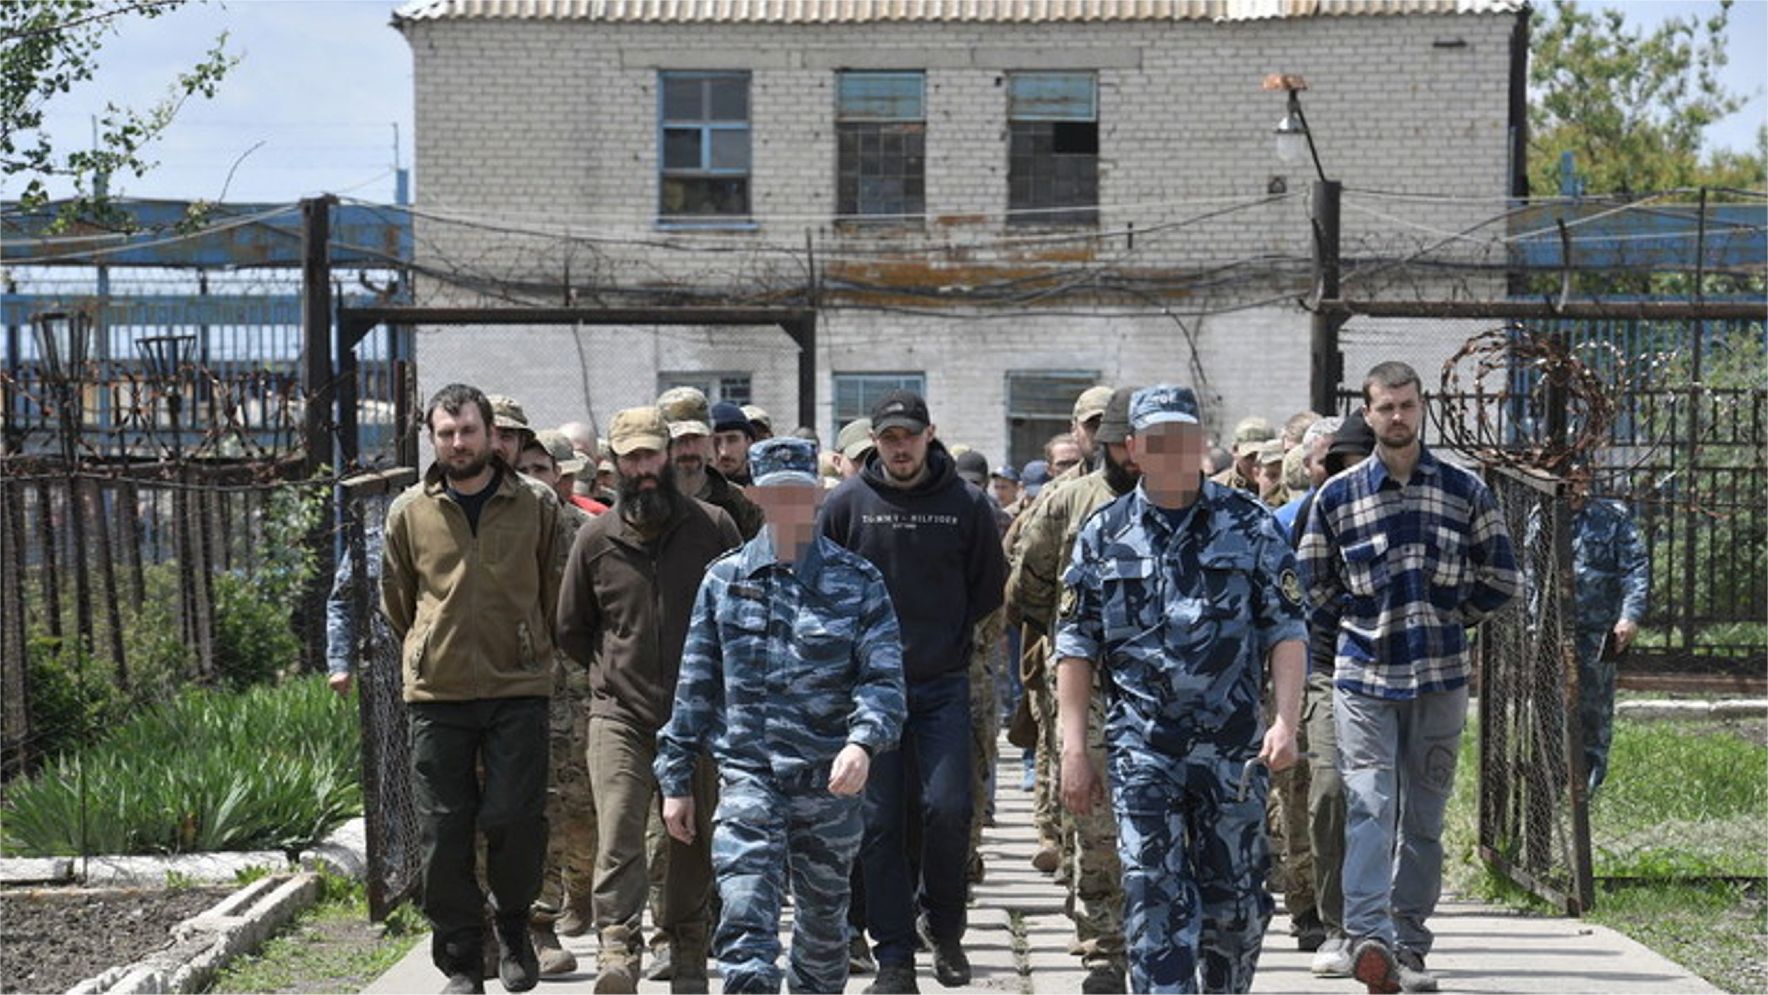 Ukrajina ostreľovala väznicu zadržiavajúcu vojnových zajatcov – predstaviteľ Donbasu